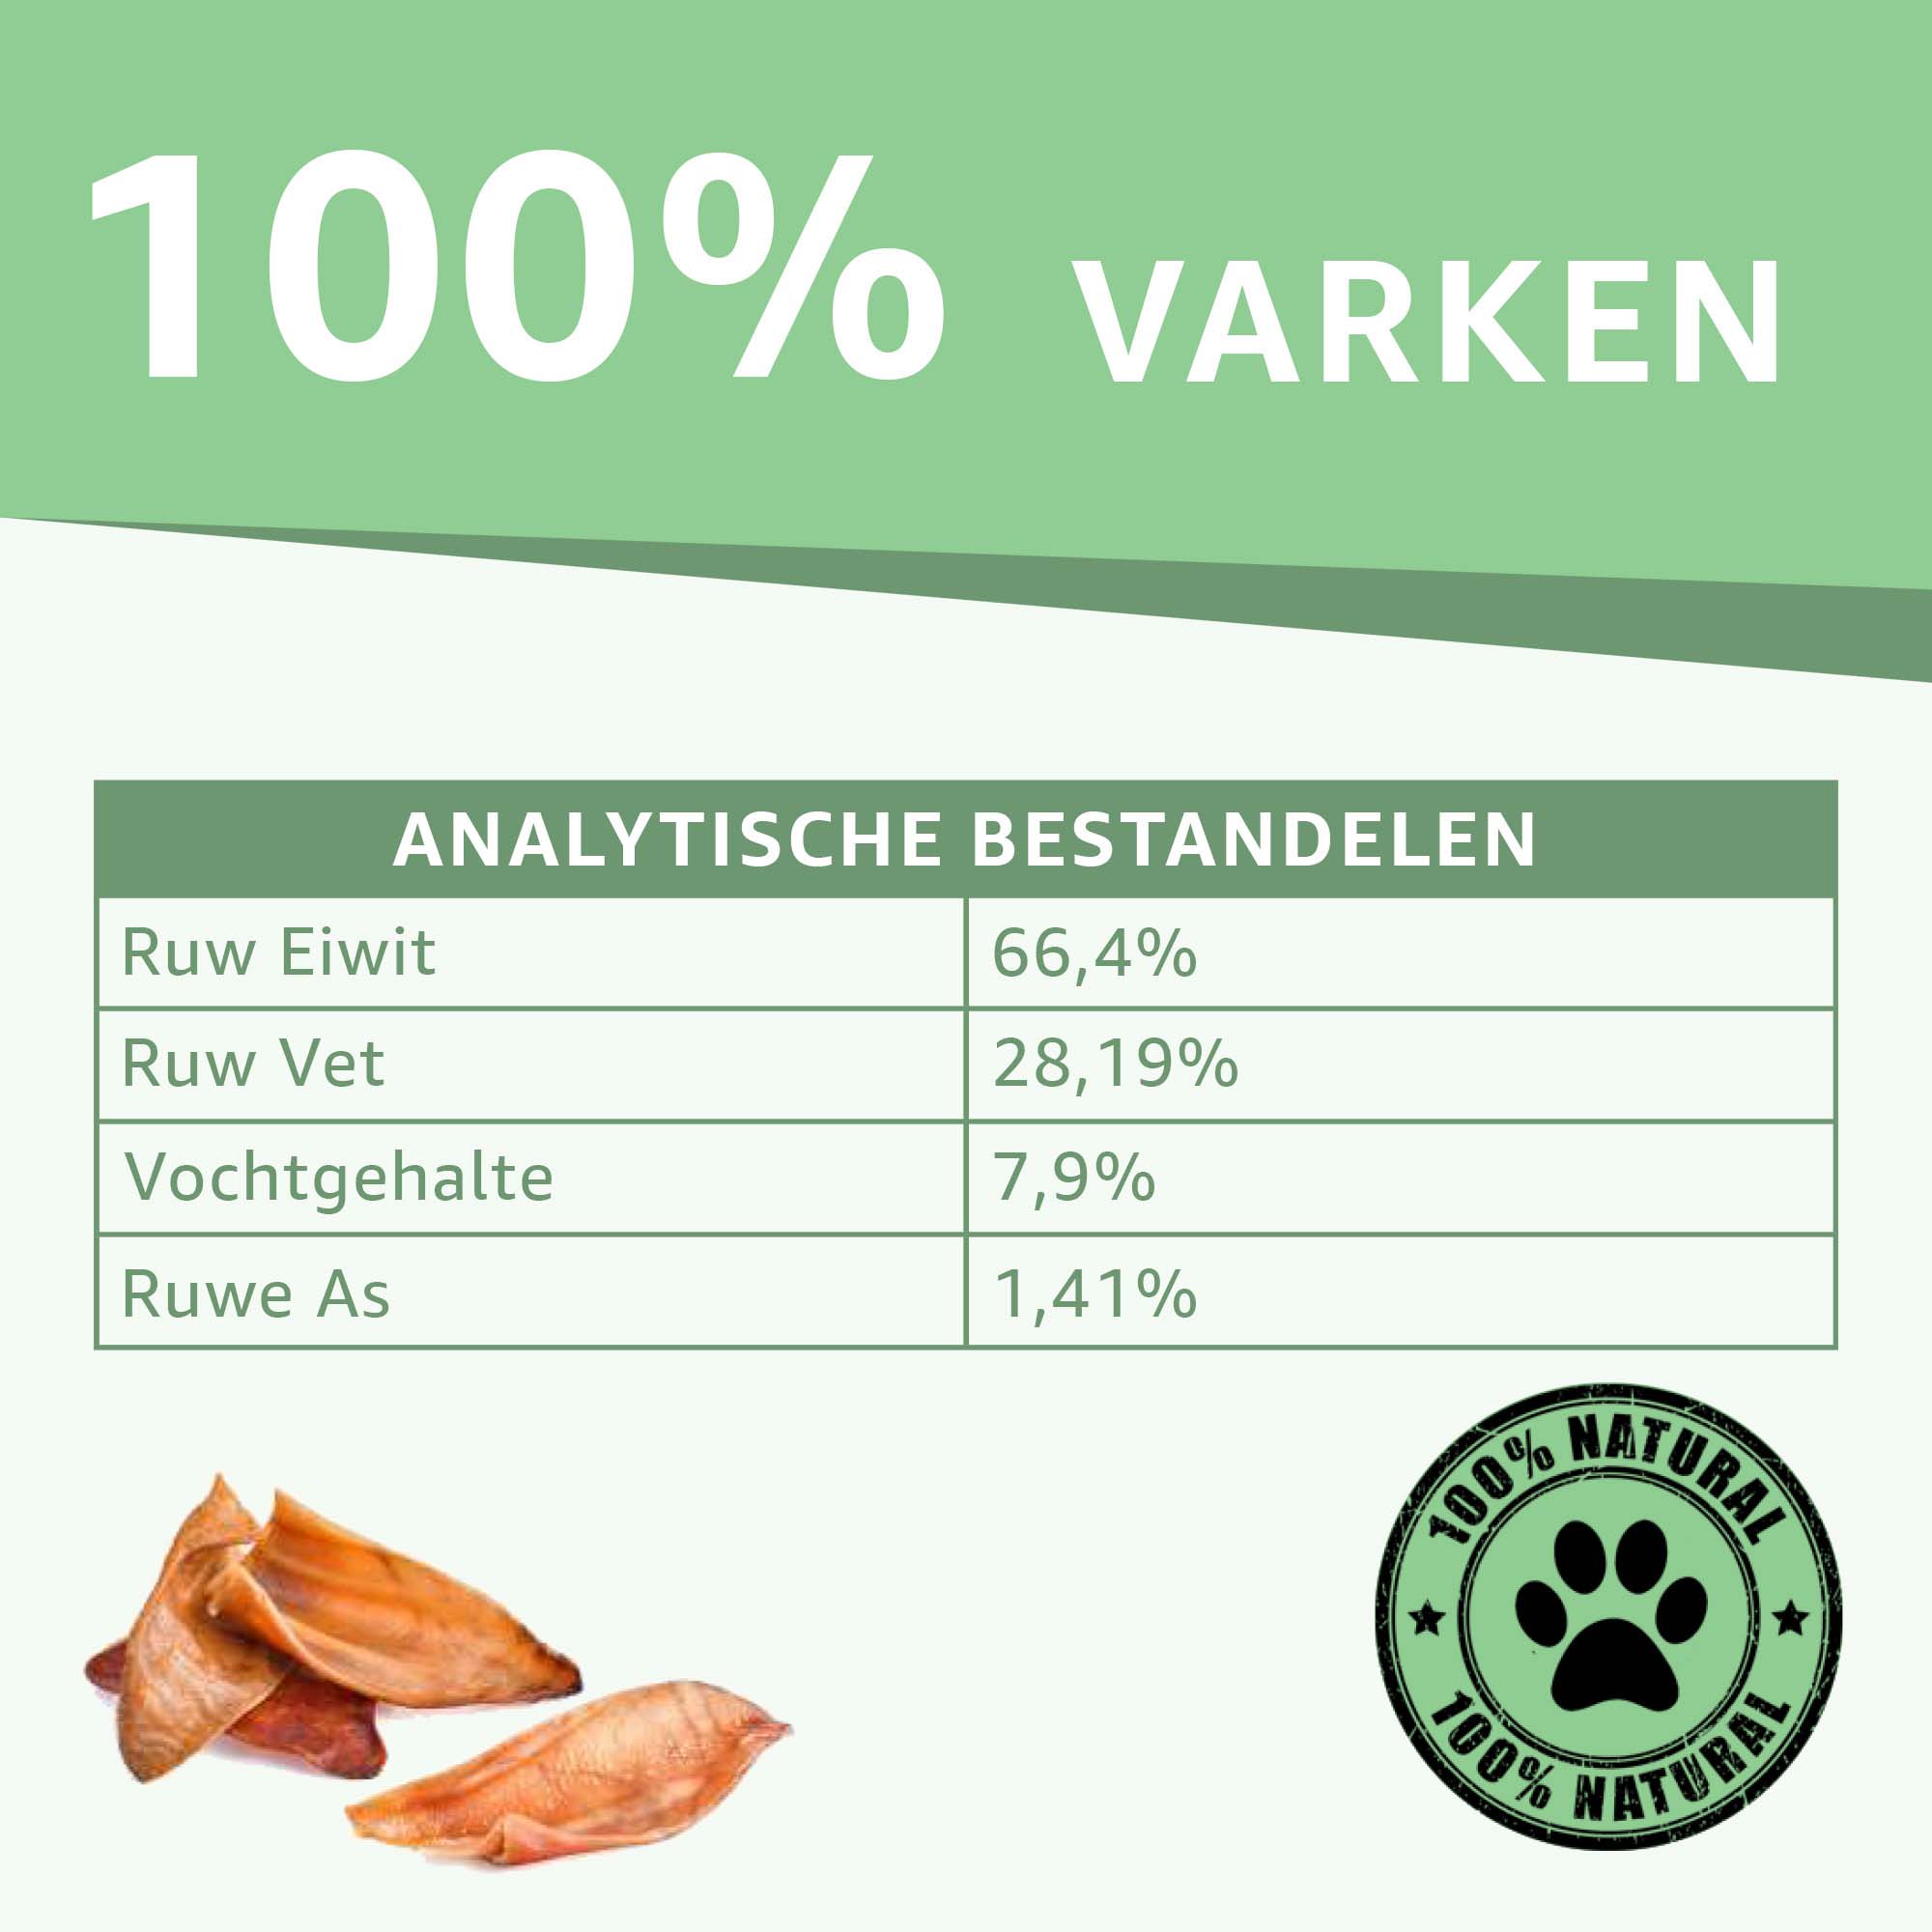 "Analytische Bestandsdelen Halve Varkensoren Snacks: Voedingswaarde en samenstelling onthuld. Natuurlijke eiwitbron, zonder toevoegingen. De perfecte optie voor gezonde en smakelijke hondensnacks."